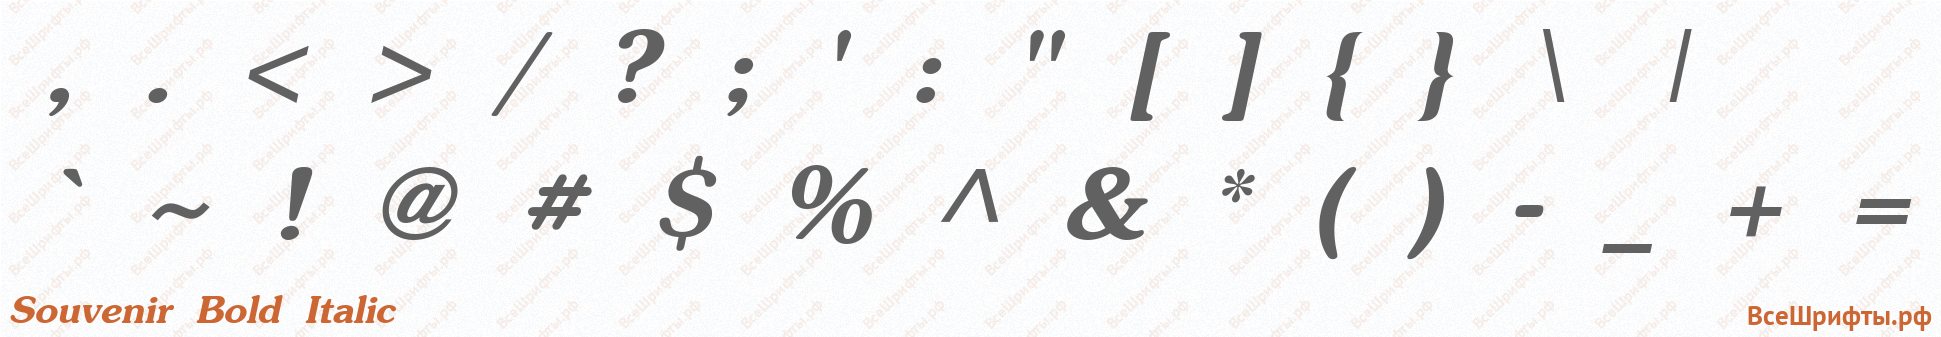 Шрифт Souvenir Bold Italic со знаками препинания и пунктуации